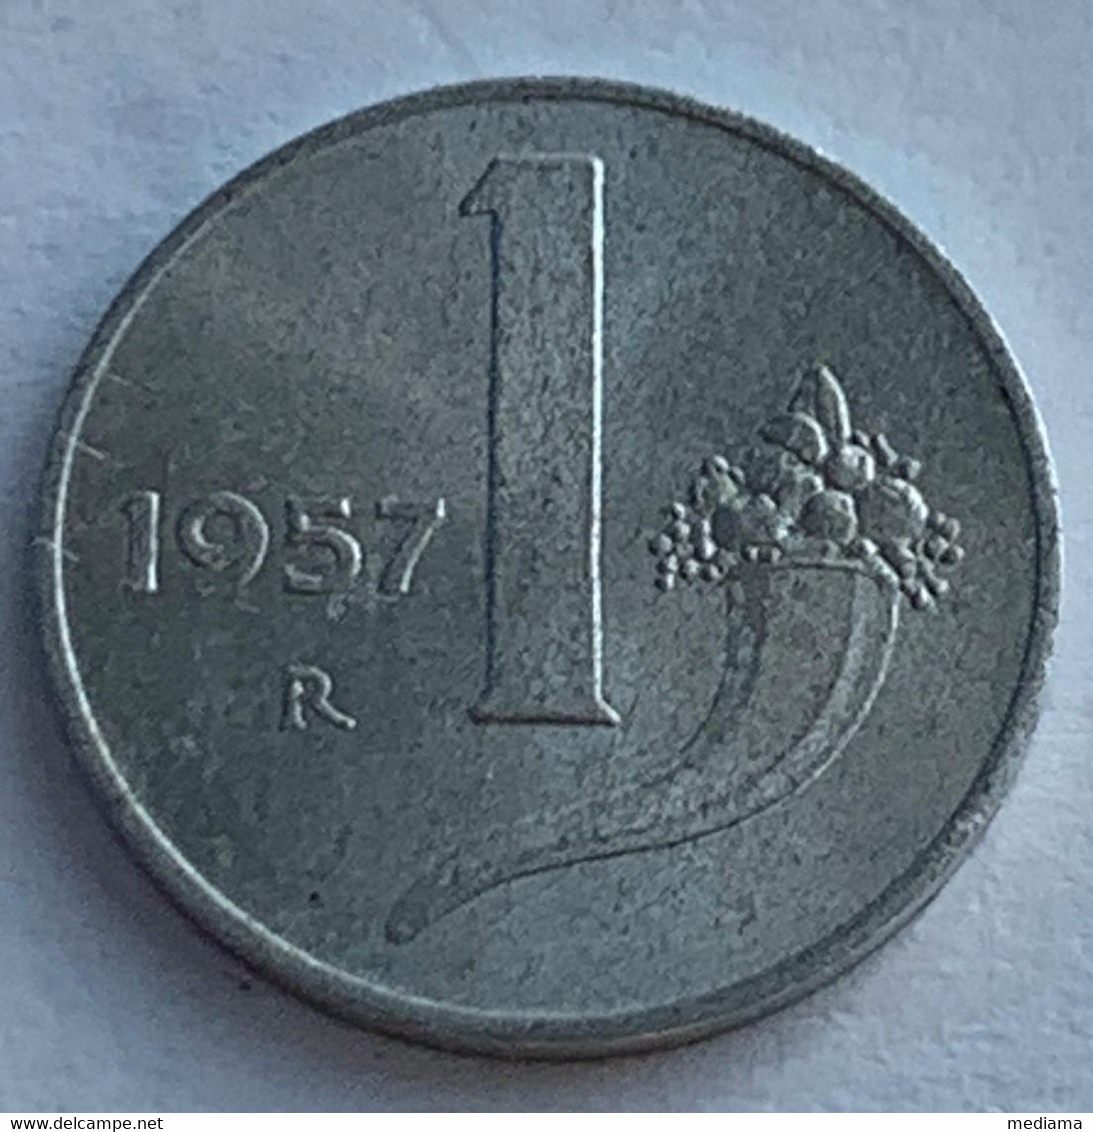 100	MONETA REPUBBLICA ITALIANA 1957 LIRE 1 - 1 Lira